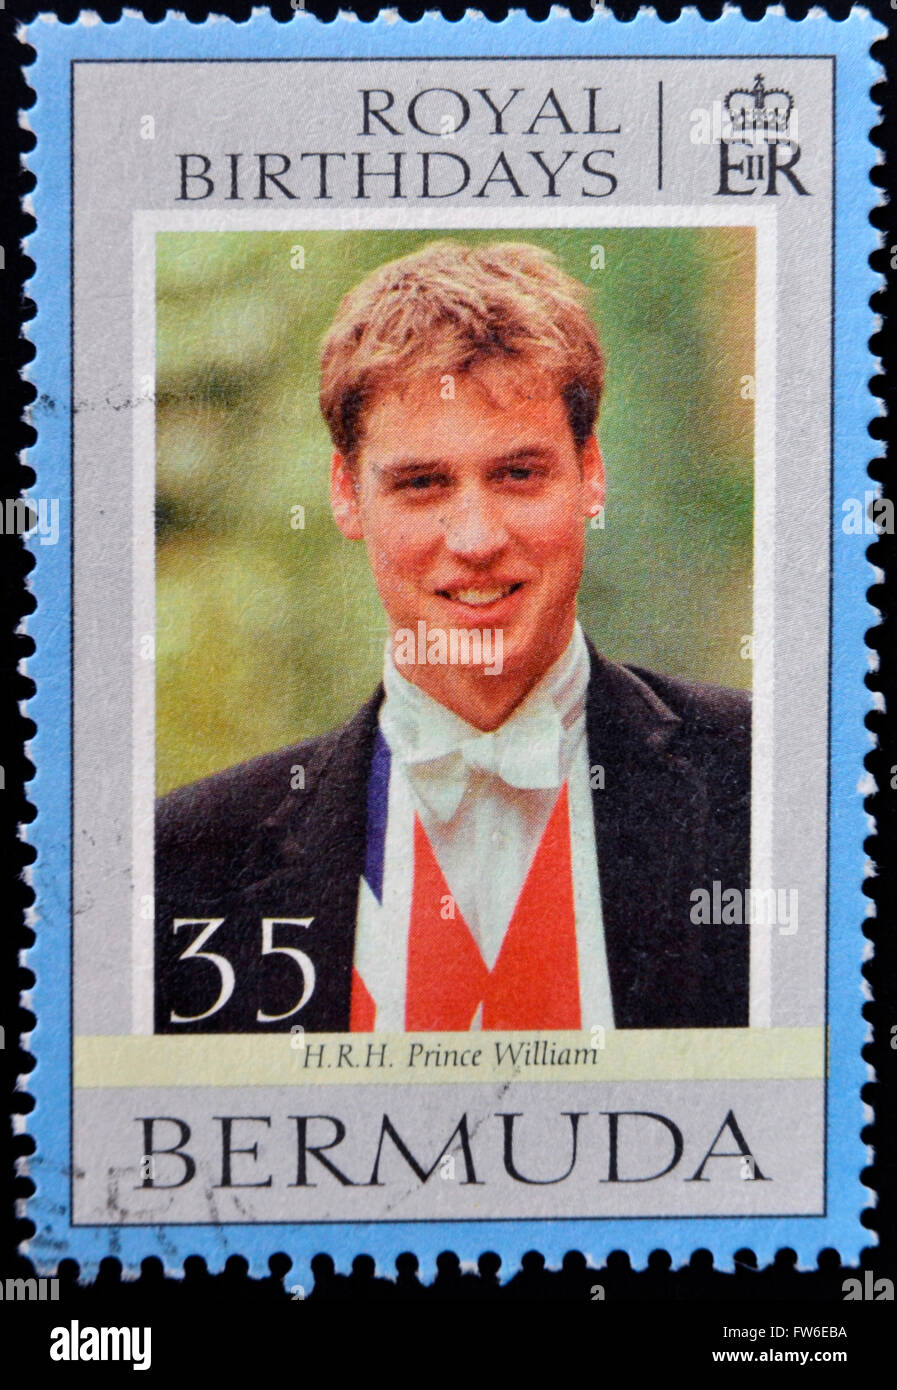 BERMUDA - CIRCA 2000: Eine Briefmarke gedruckt in Bermuda zeigt Prinz William, königliche Geburtstage, circa 2000 Stockfoto